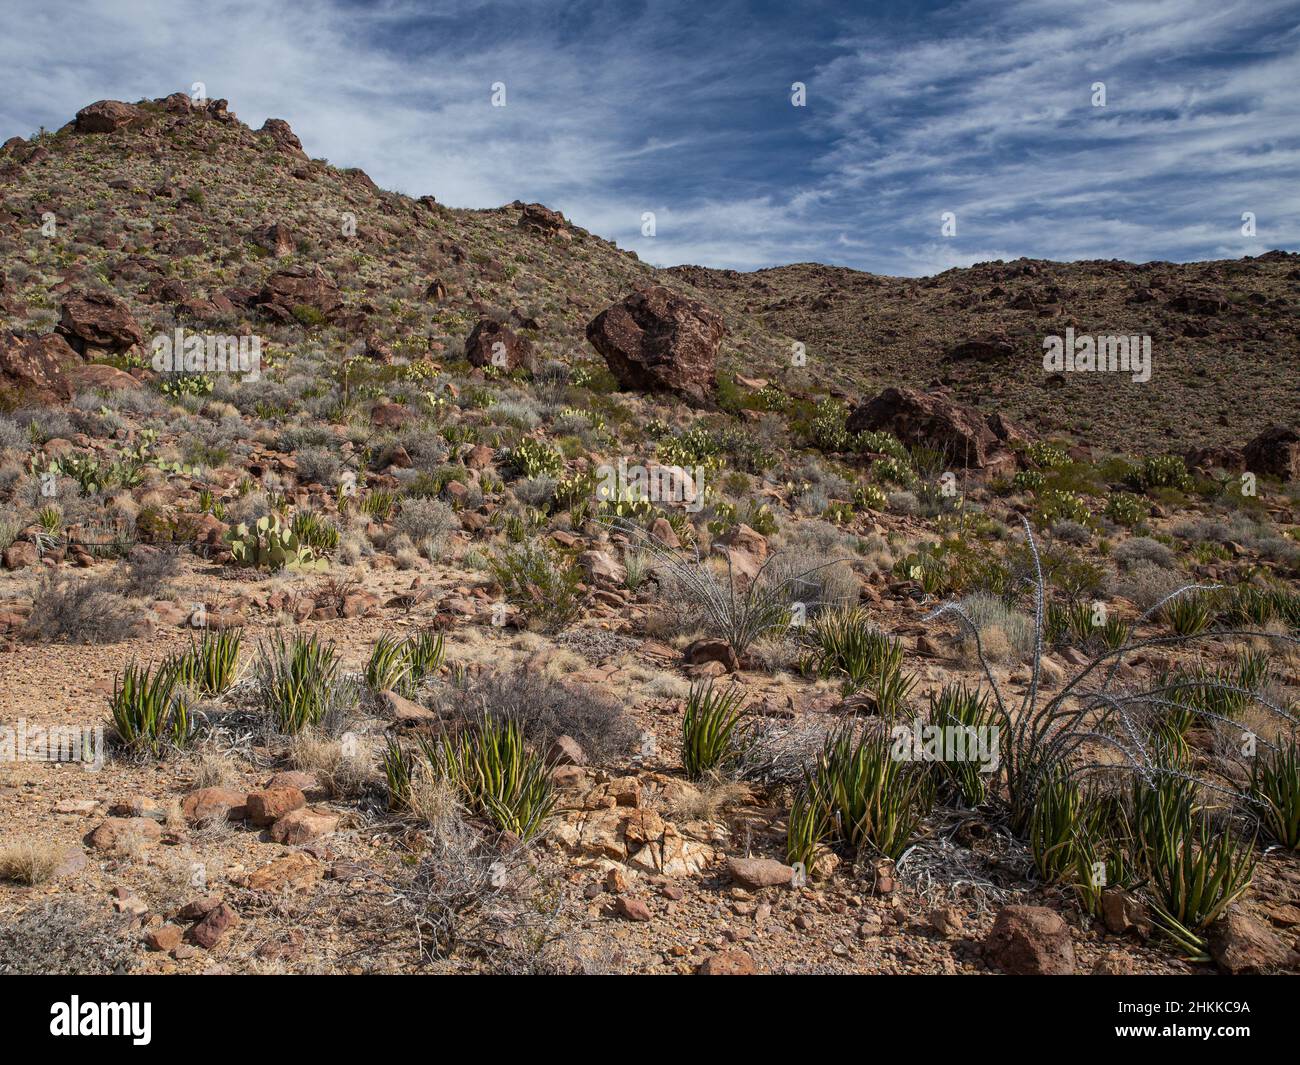 Las grandes rocas se desploman en una colina cubierta de vegetación del desierto de Chihuahua. Foto de stock